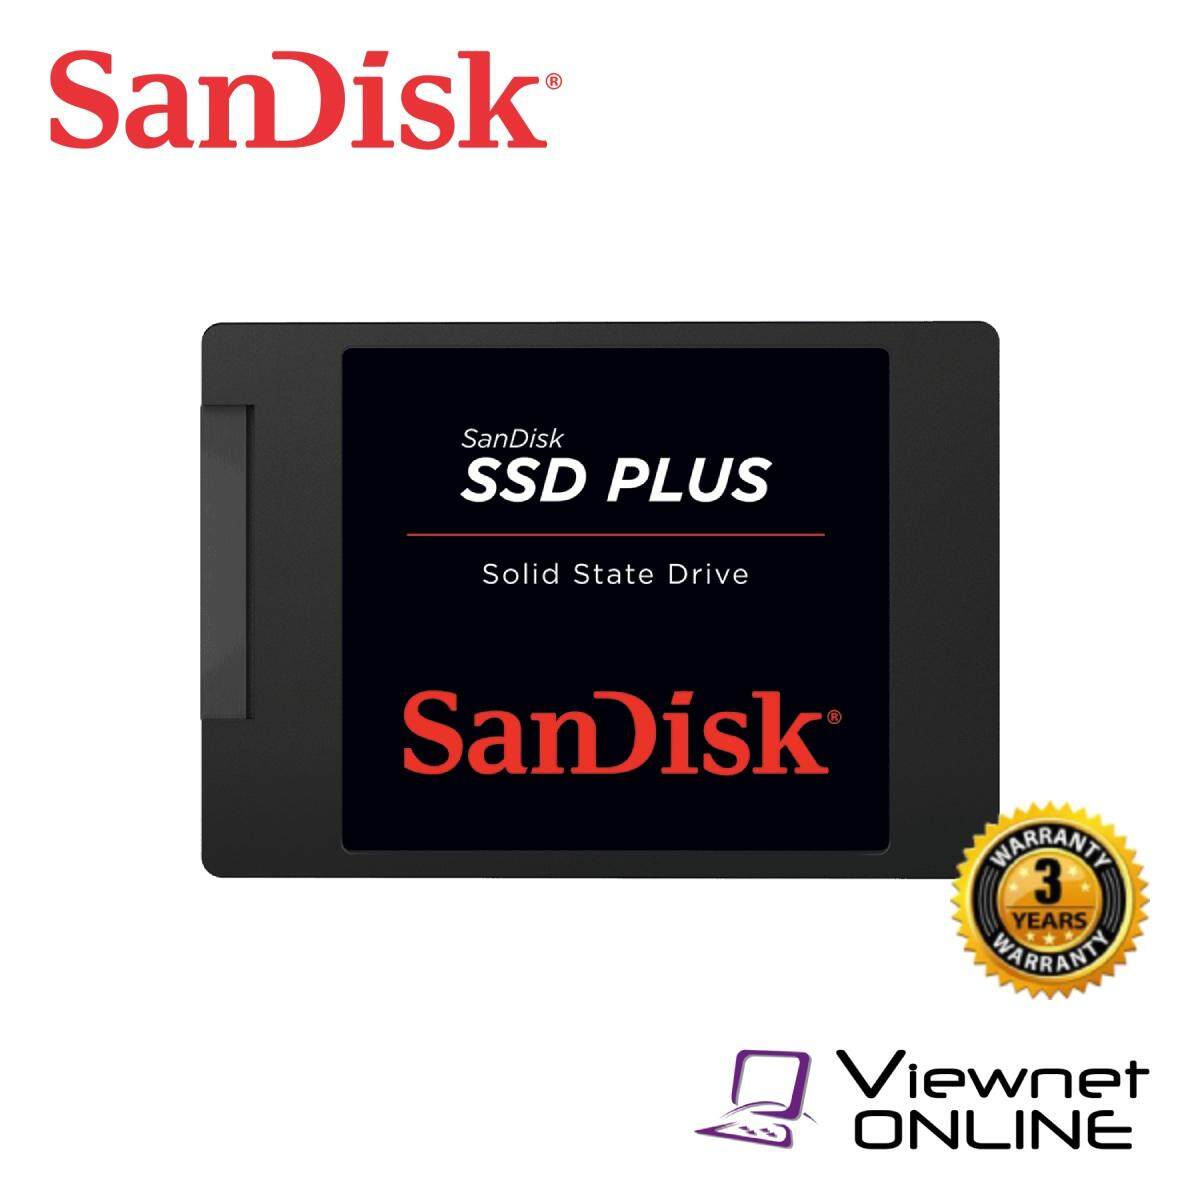 SanDisk SSD Plus SATA III 120GB/240GB/480GB/1TB (6 Gb/s) Internal Solid State Drive (up to 535MB/s) -1TB